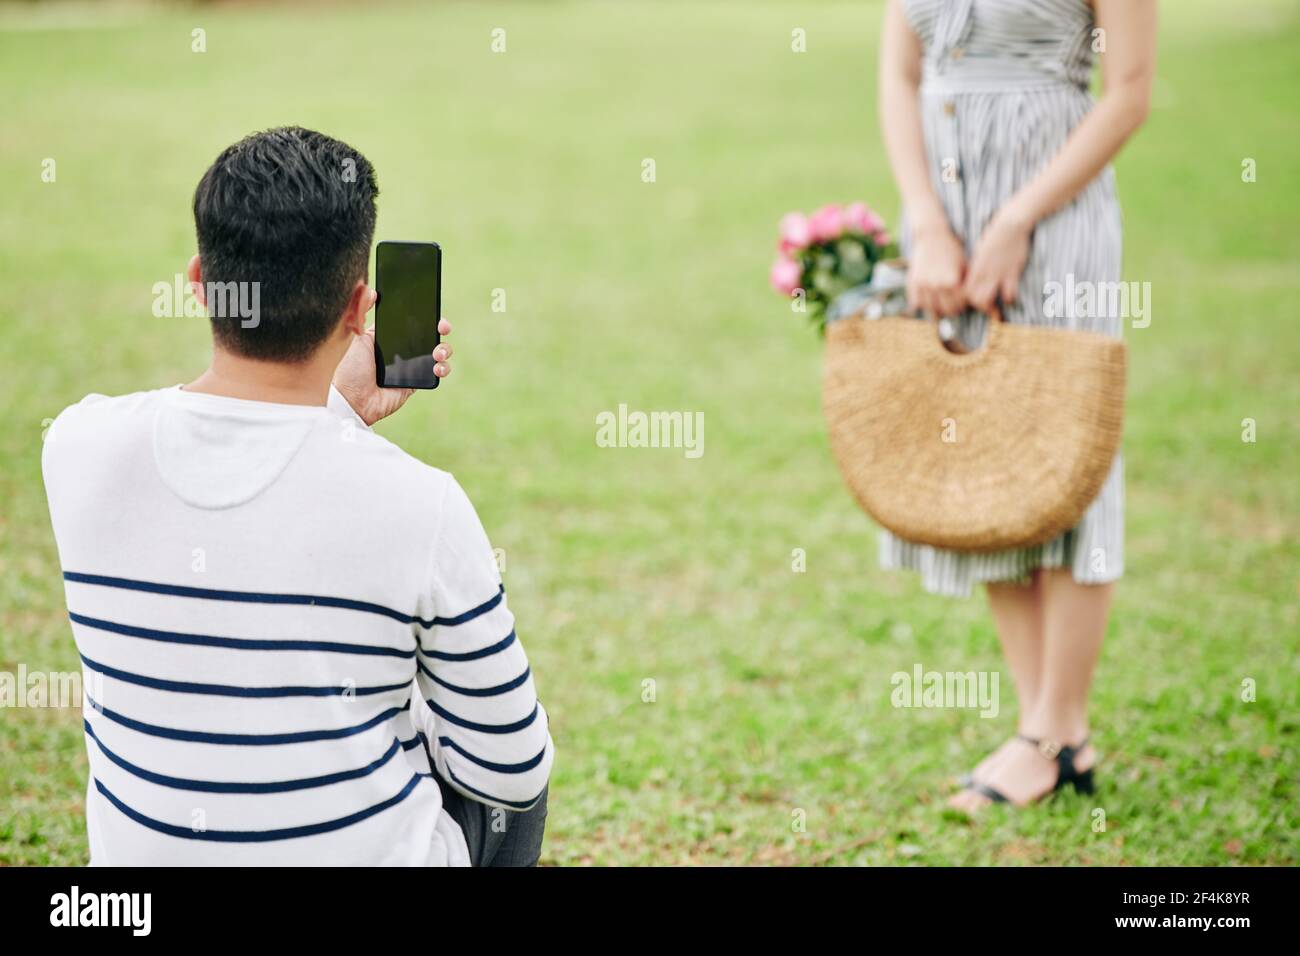 Junger Mann fotografiert seine Freundin mit Weidensack Von rosa Rosen im Stadtpark Stockfoto